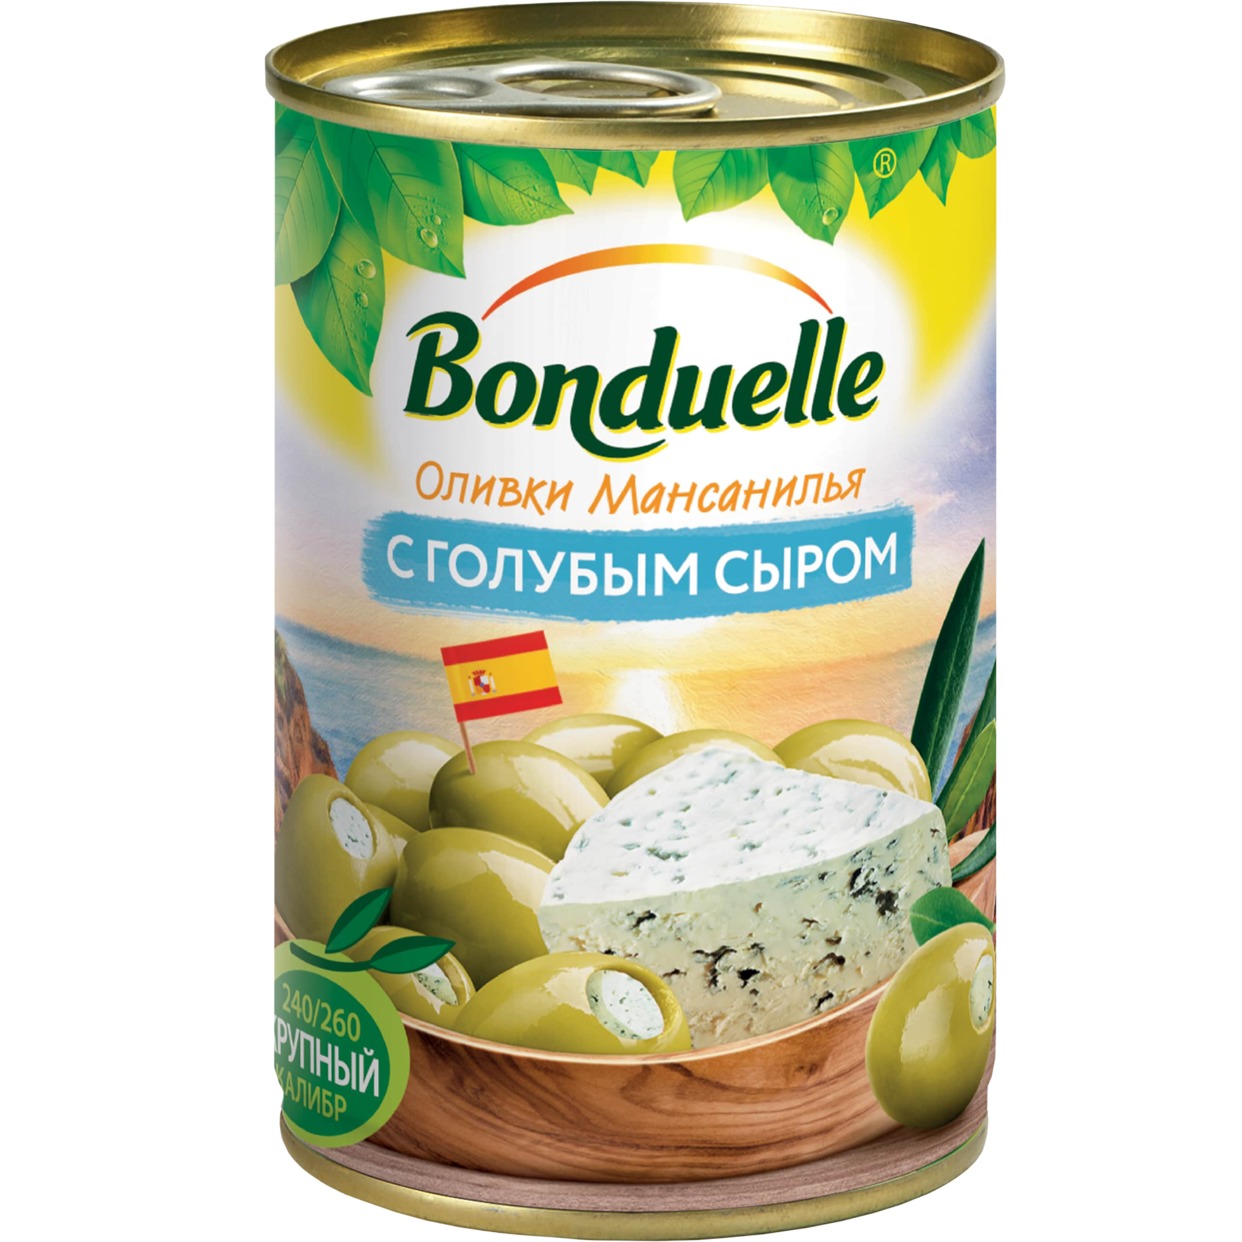 Оливки Bonduelle Мансанилья с голубым сыром 314 мл по акции в Пятерочке